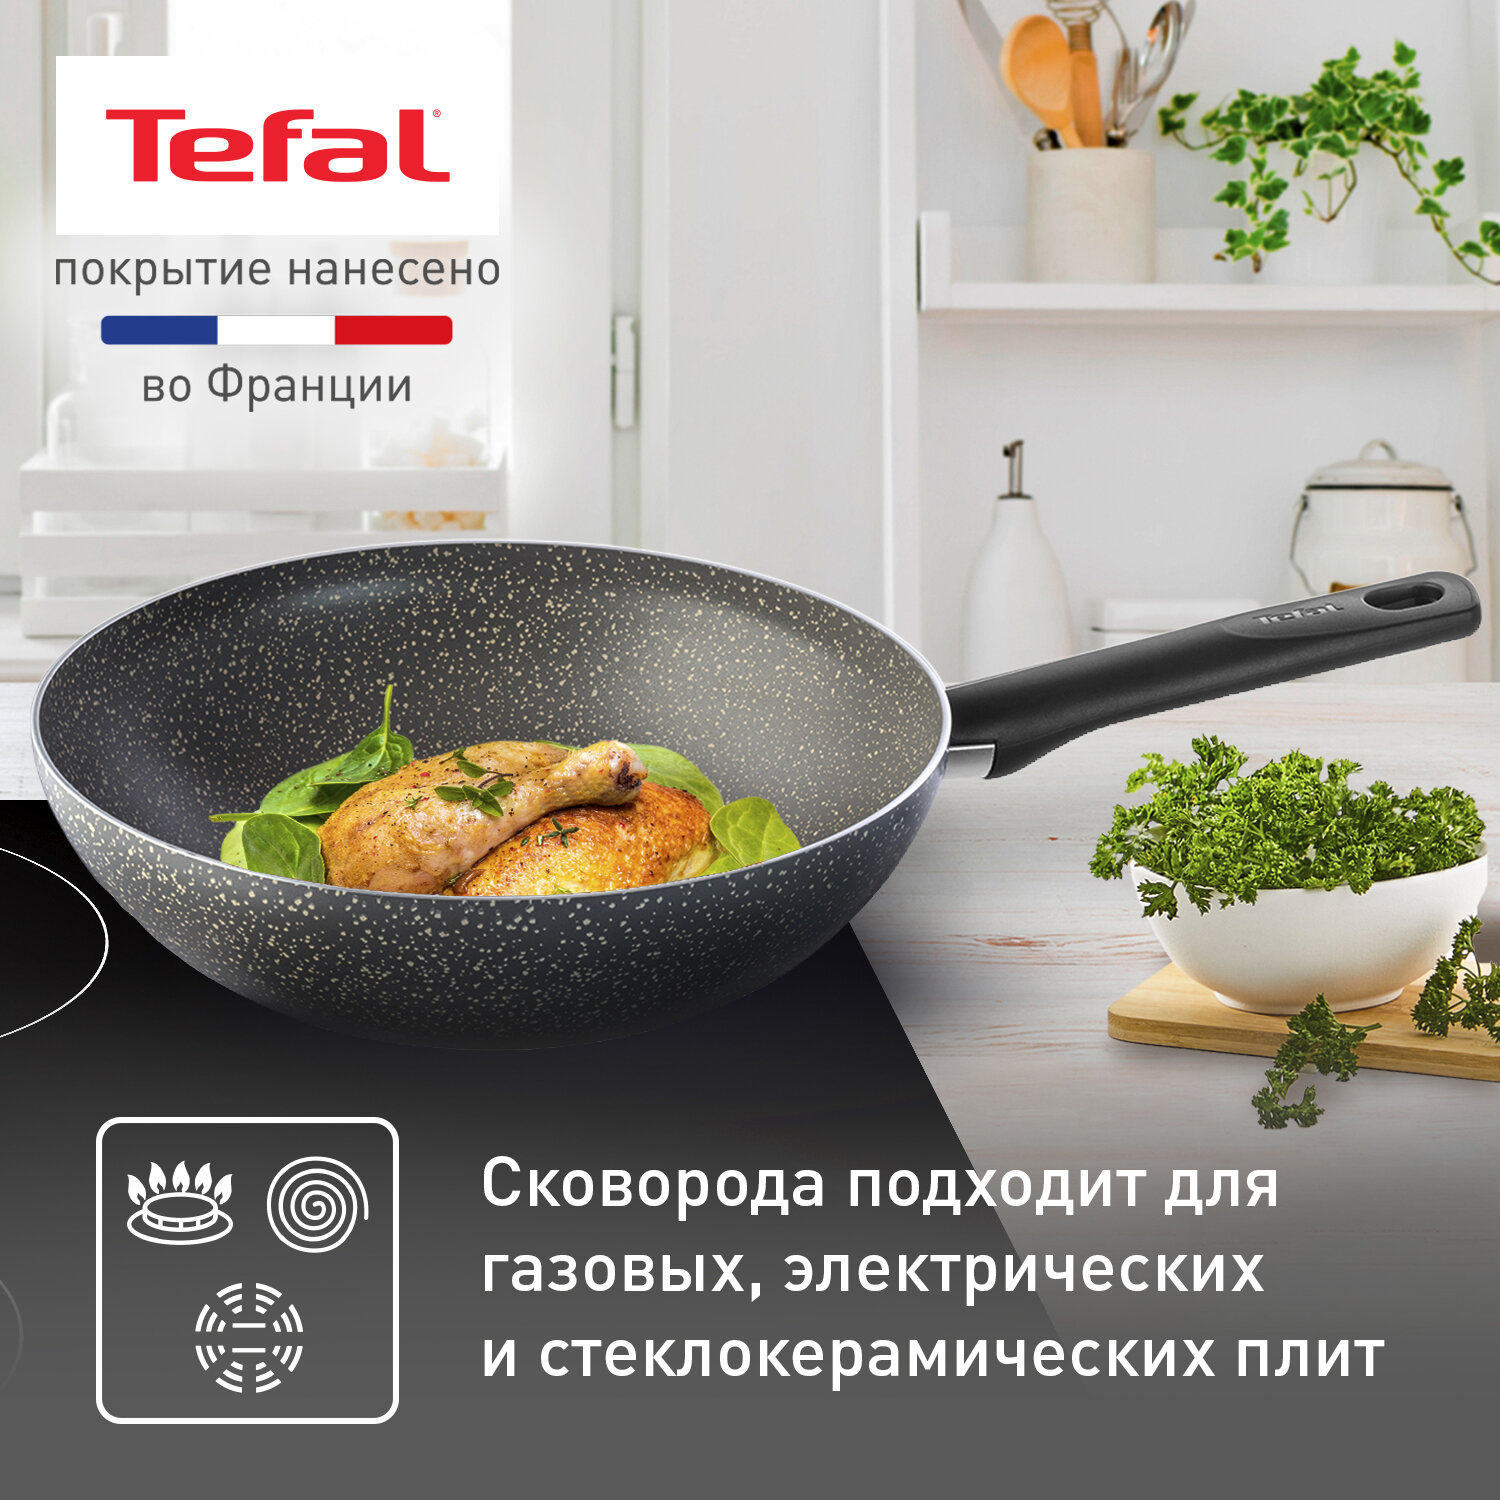 Сковорода вок Tefal Natural Cook 04213628, диаметр 28 см, с индикатором температуры и антипригарным покрытием, для газовых, электрических плит